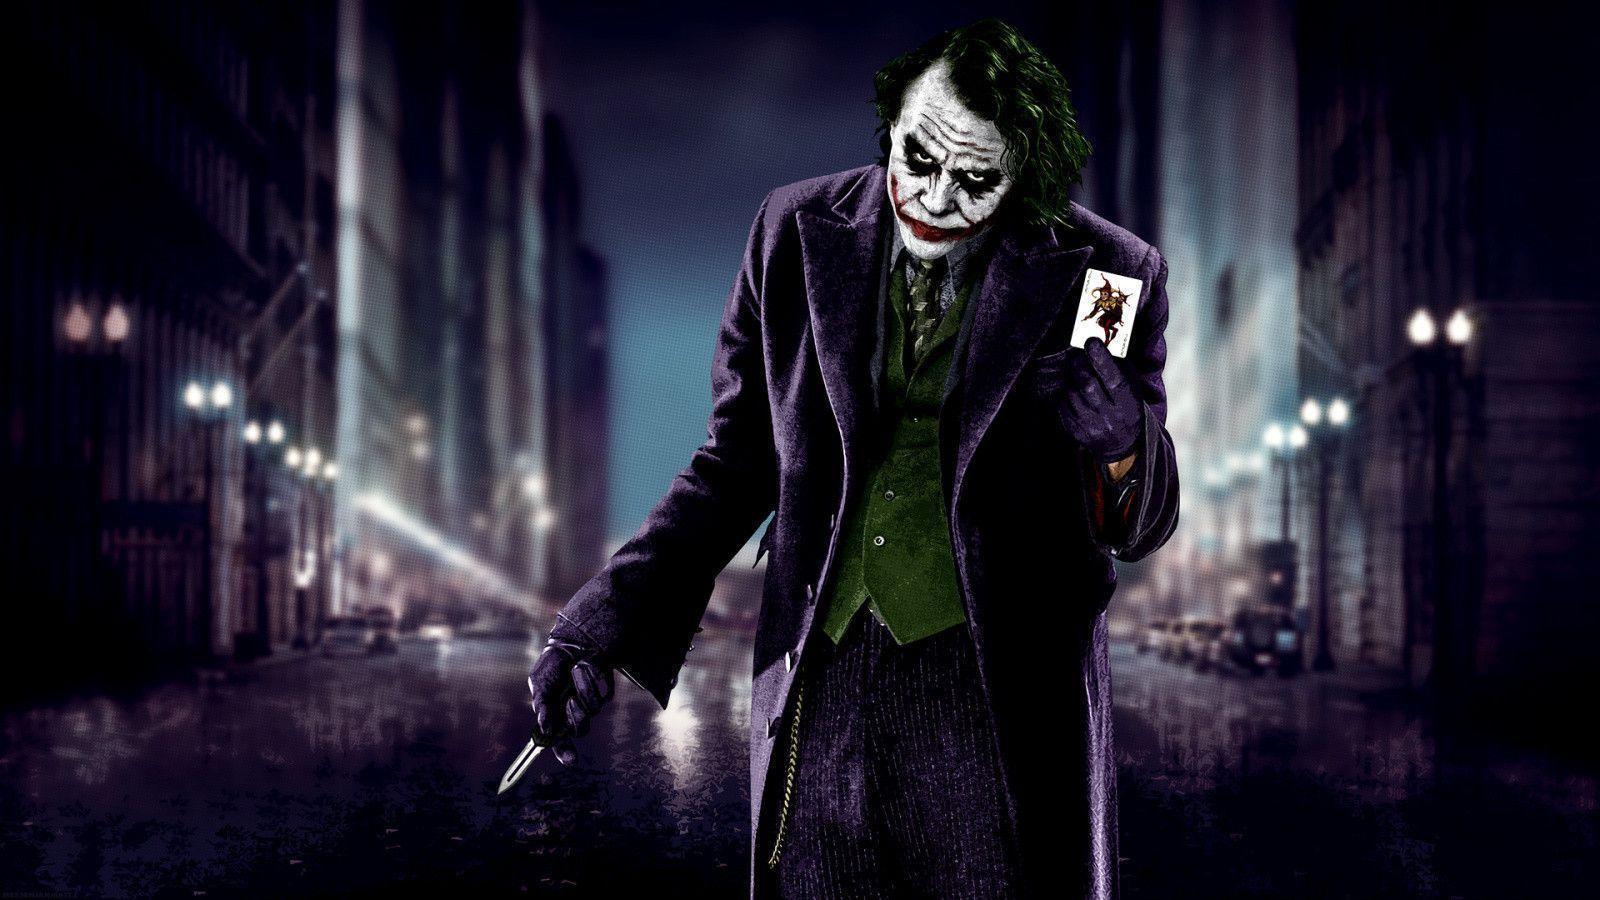 The Dark Knight Joker Wallpaper